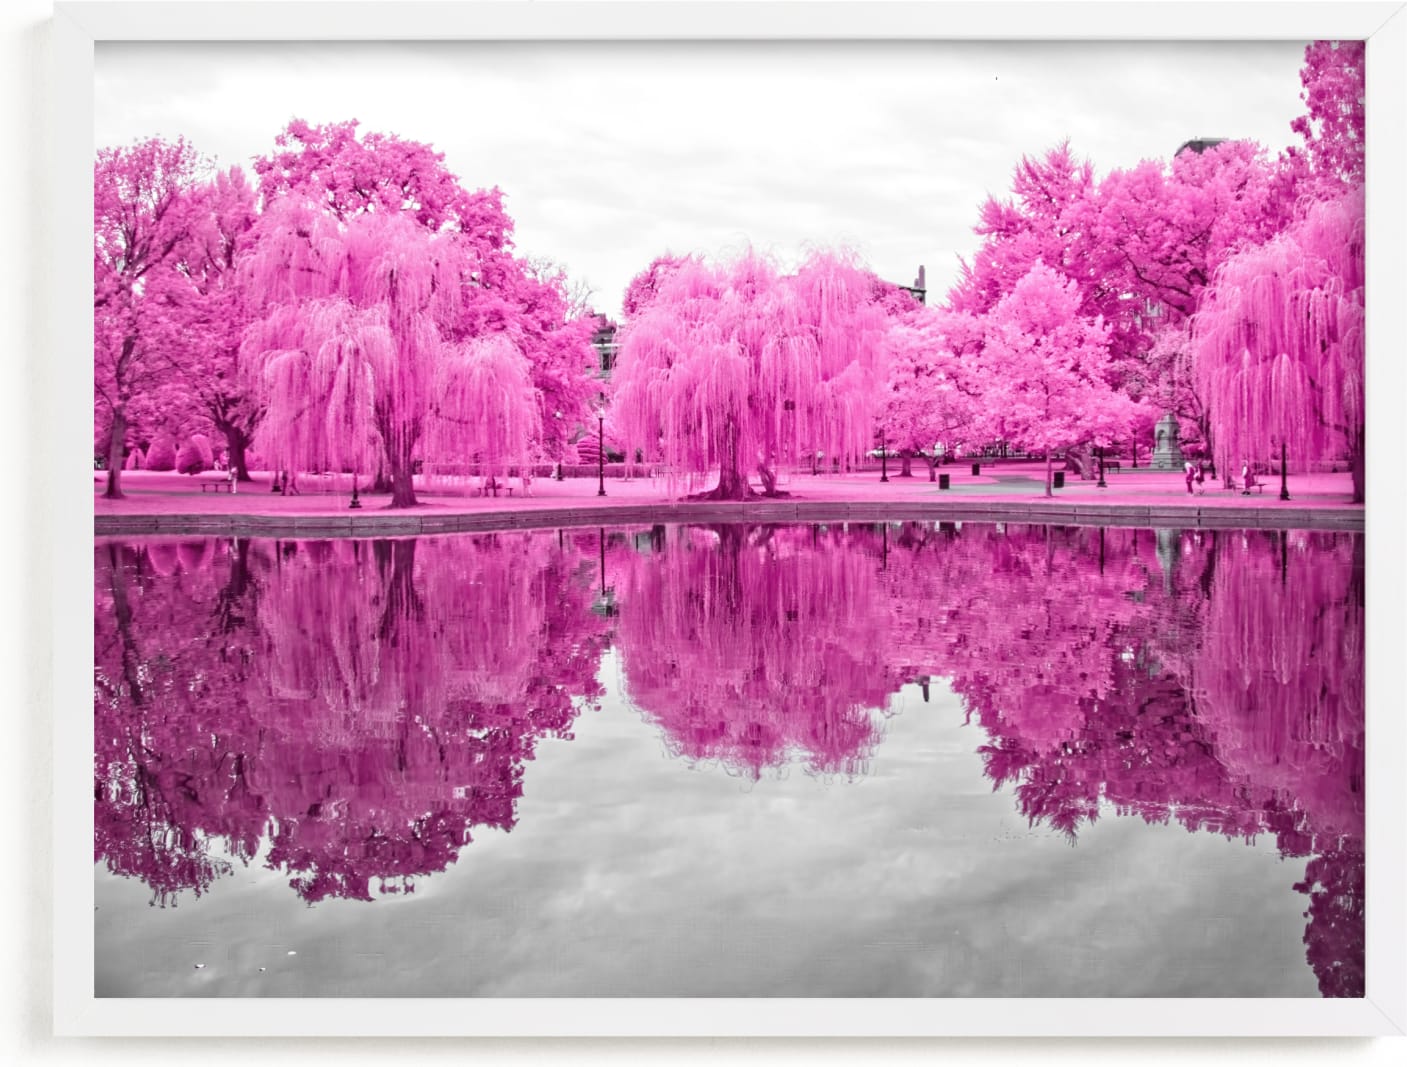 This is a pink art by Deborah Chou called pink season.